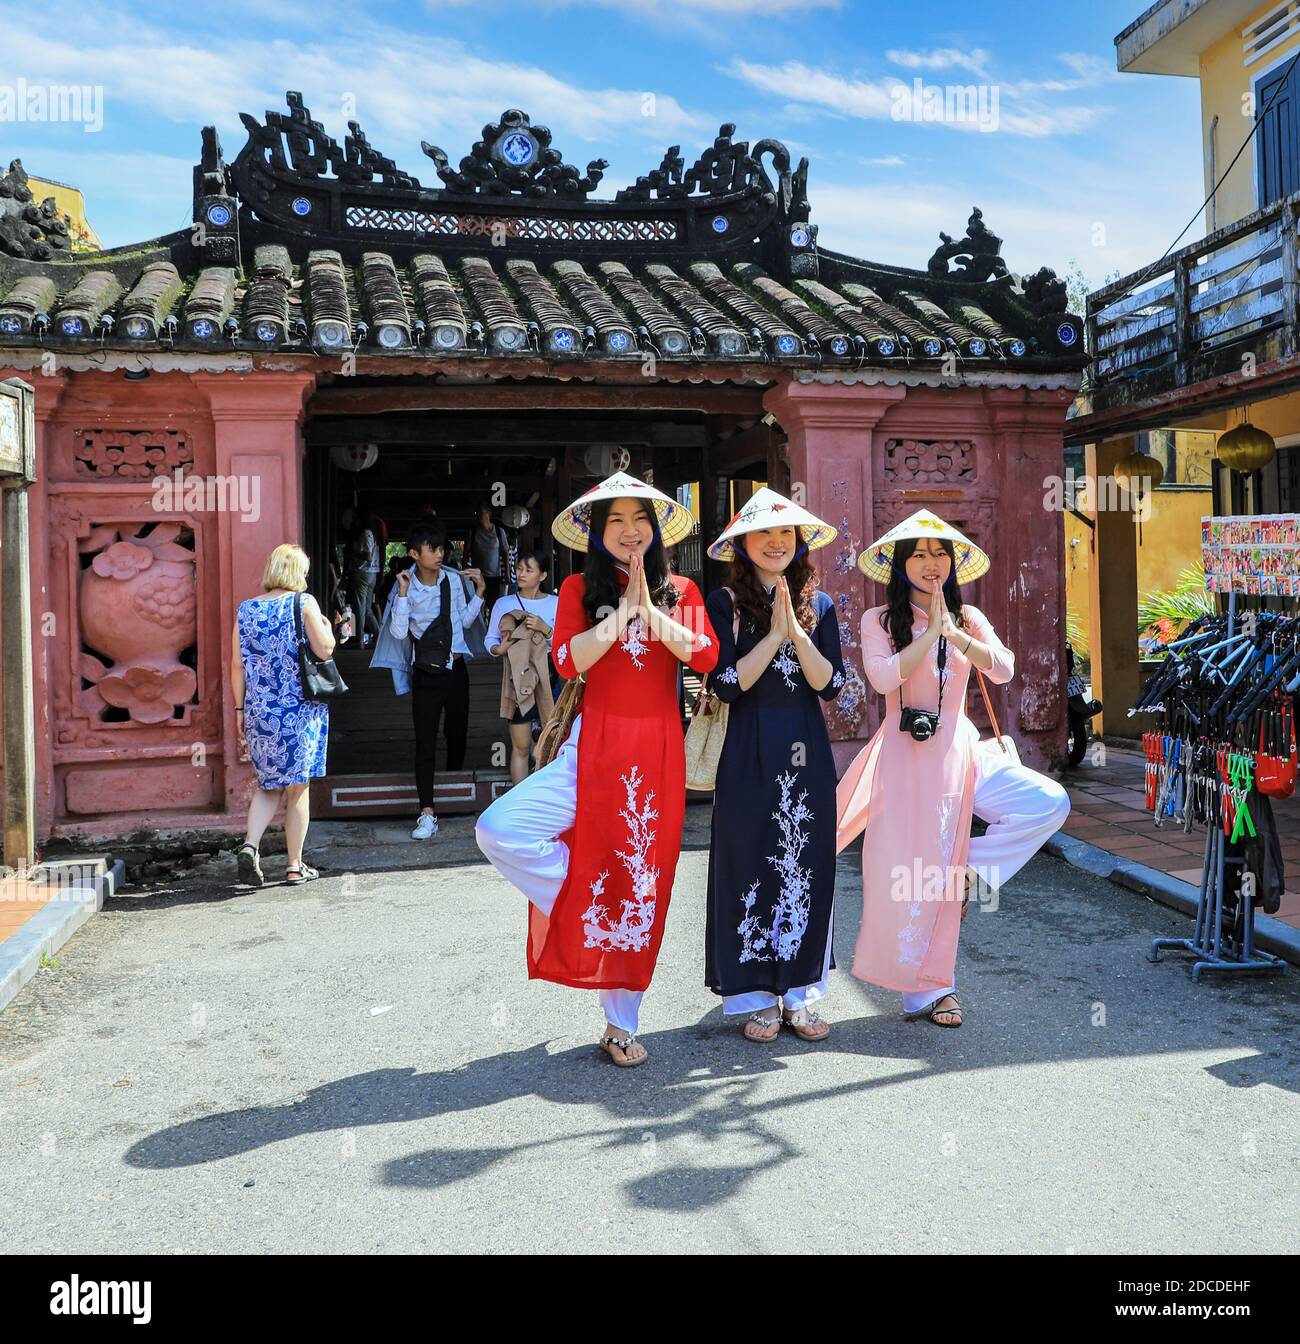 Drei vietnamesische junge Damen in traditioneller Kleidung, die Ao dai, posiert für ein Foto an der japanischen überdachten Brücke, Hoi an, Vietnam, Asien Stockfoto